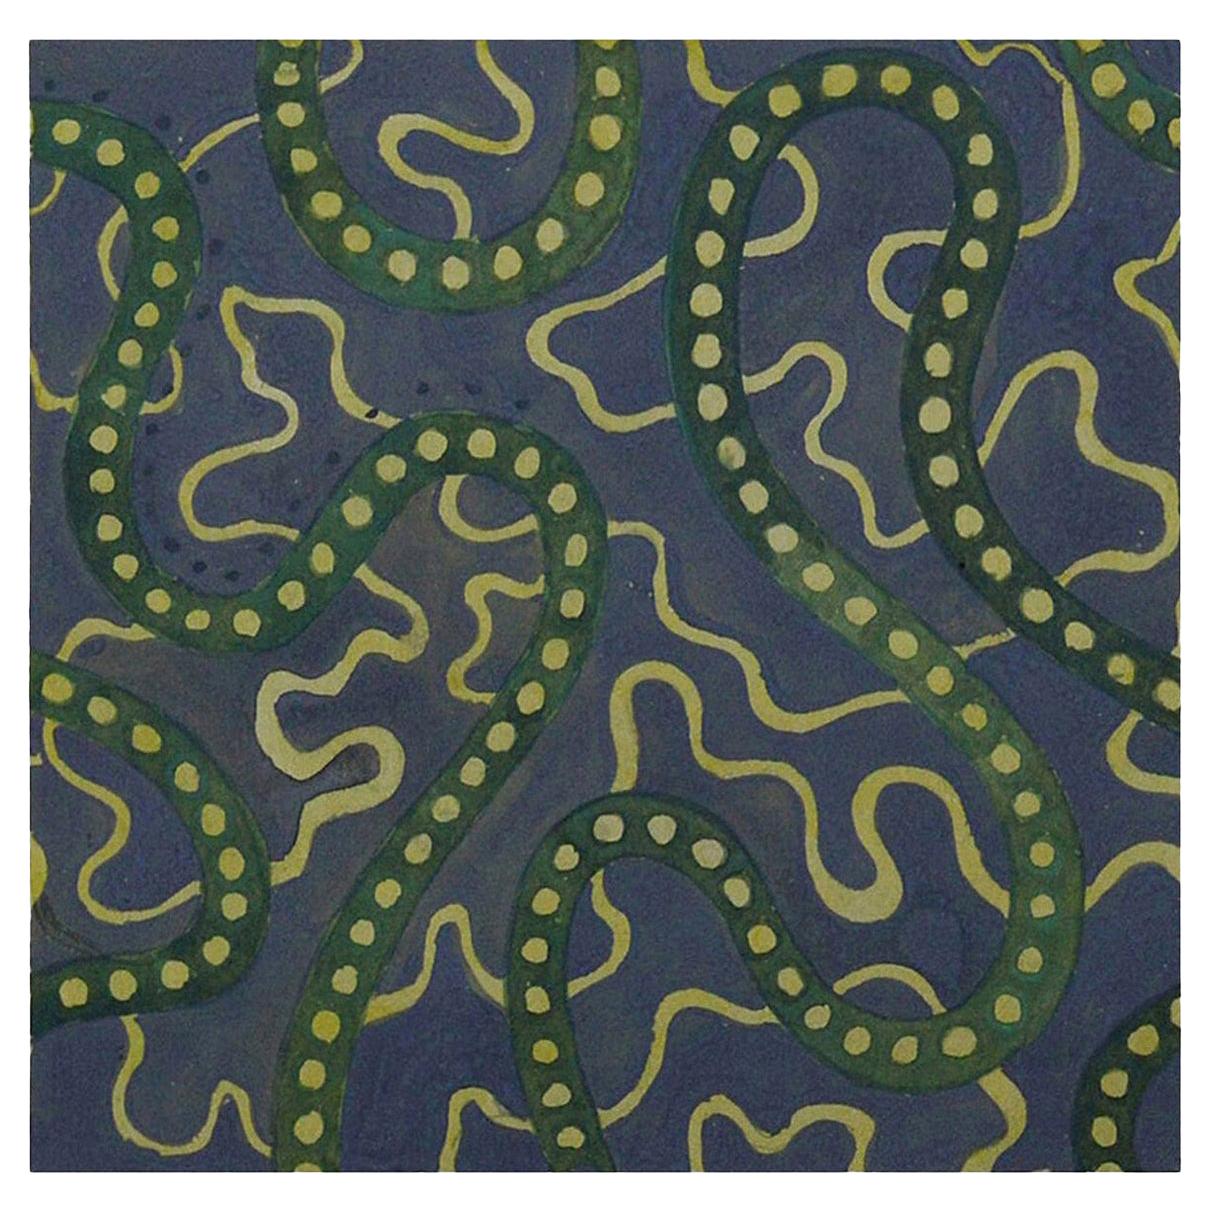 Original Artwork Textile Design, 1897